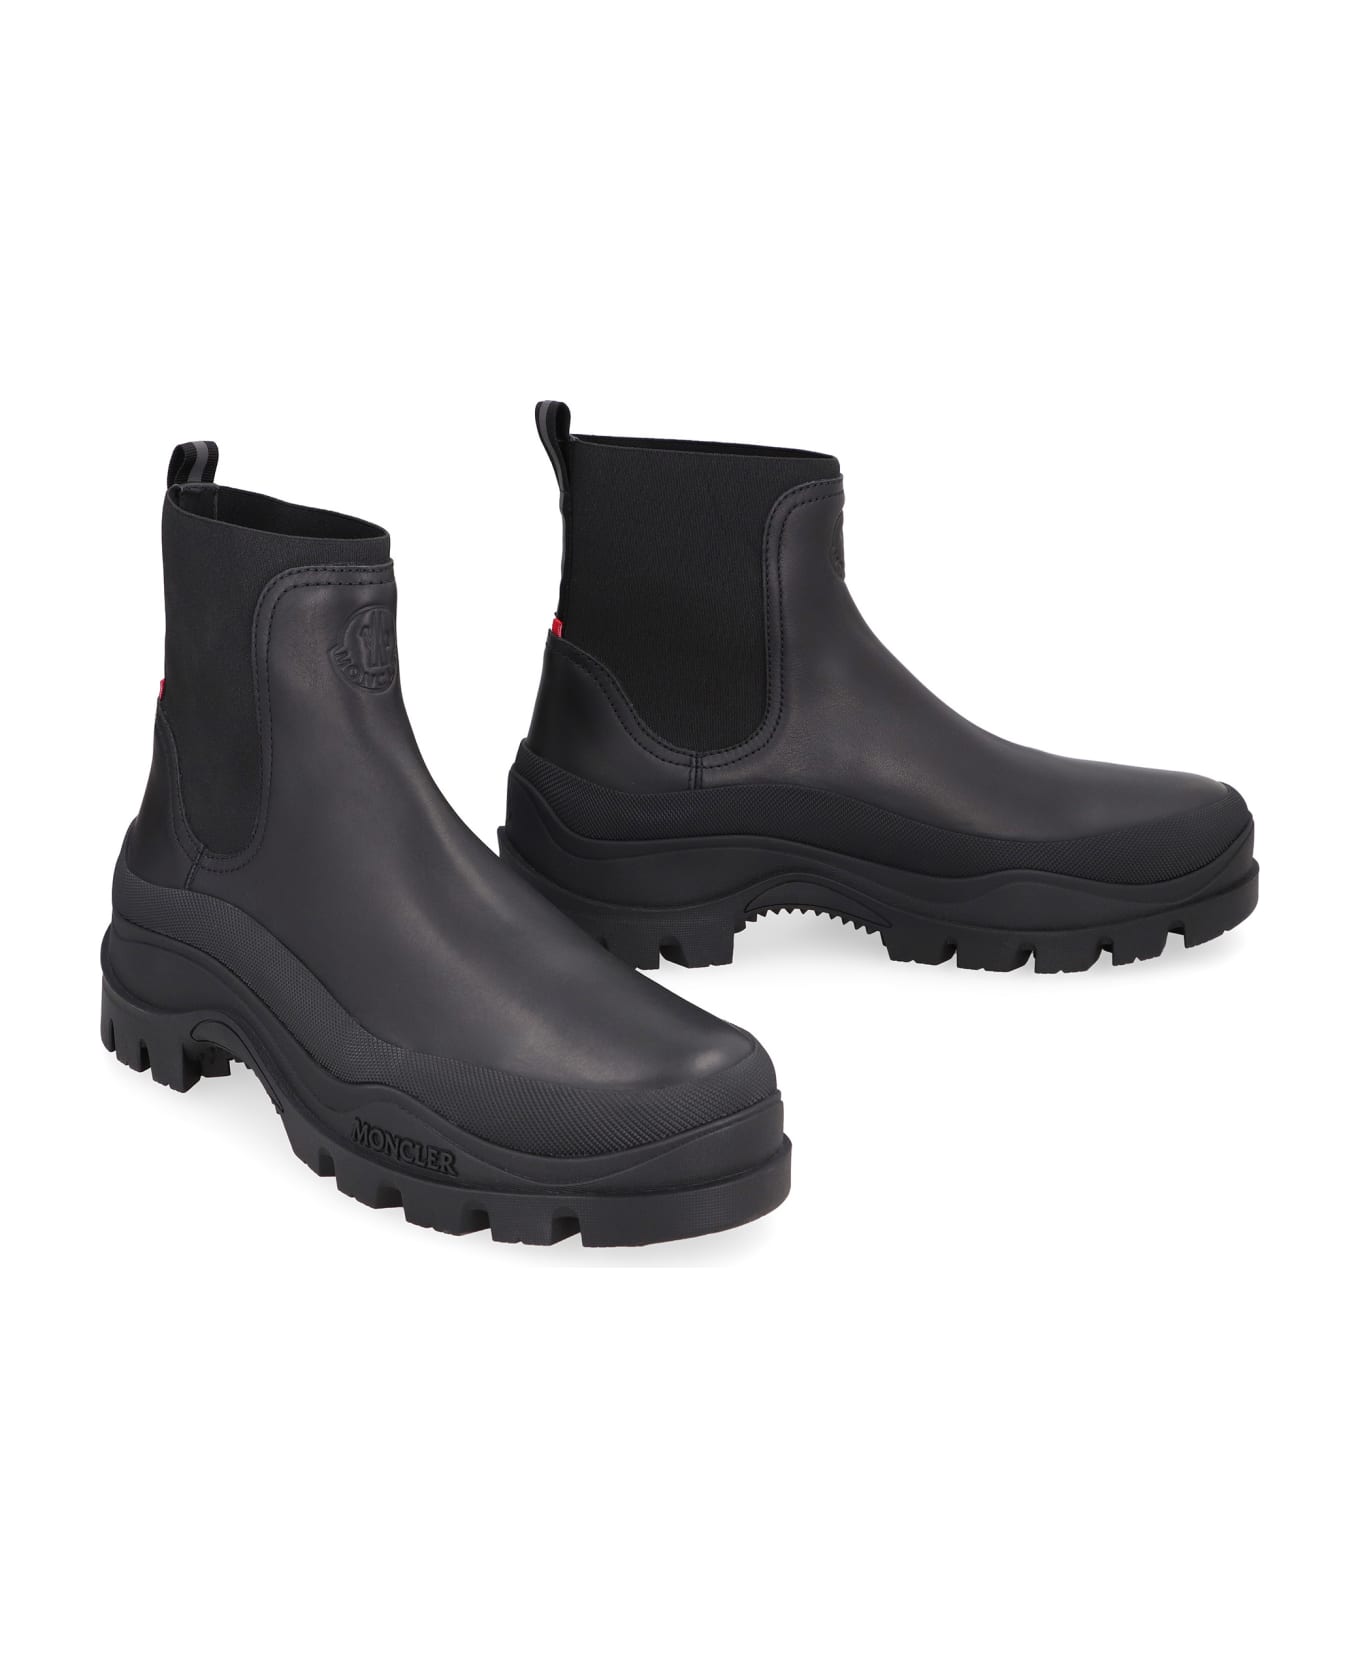 Moncler Larue Leather Chelsea Boots - Black